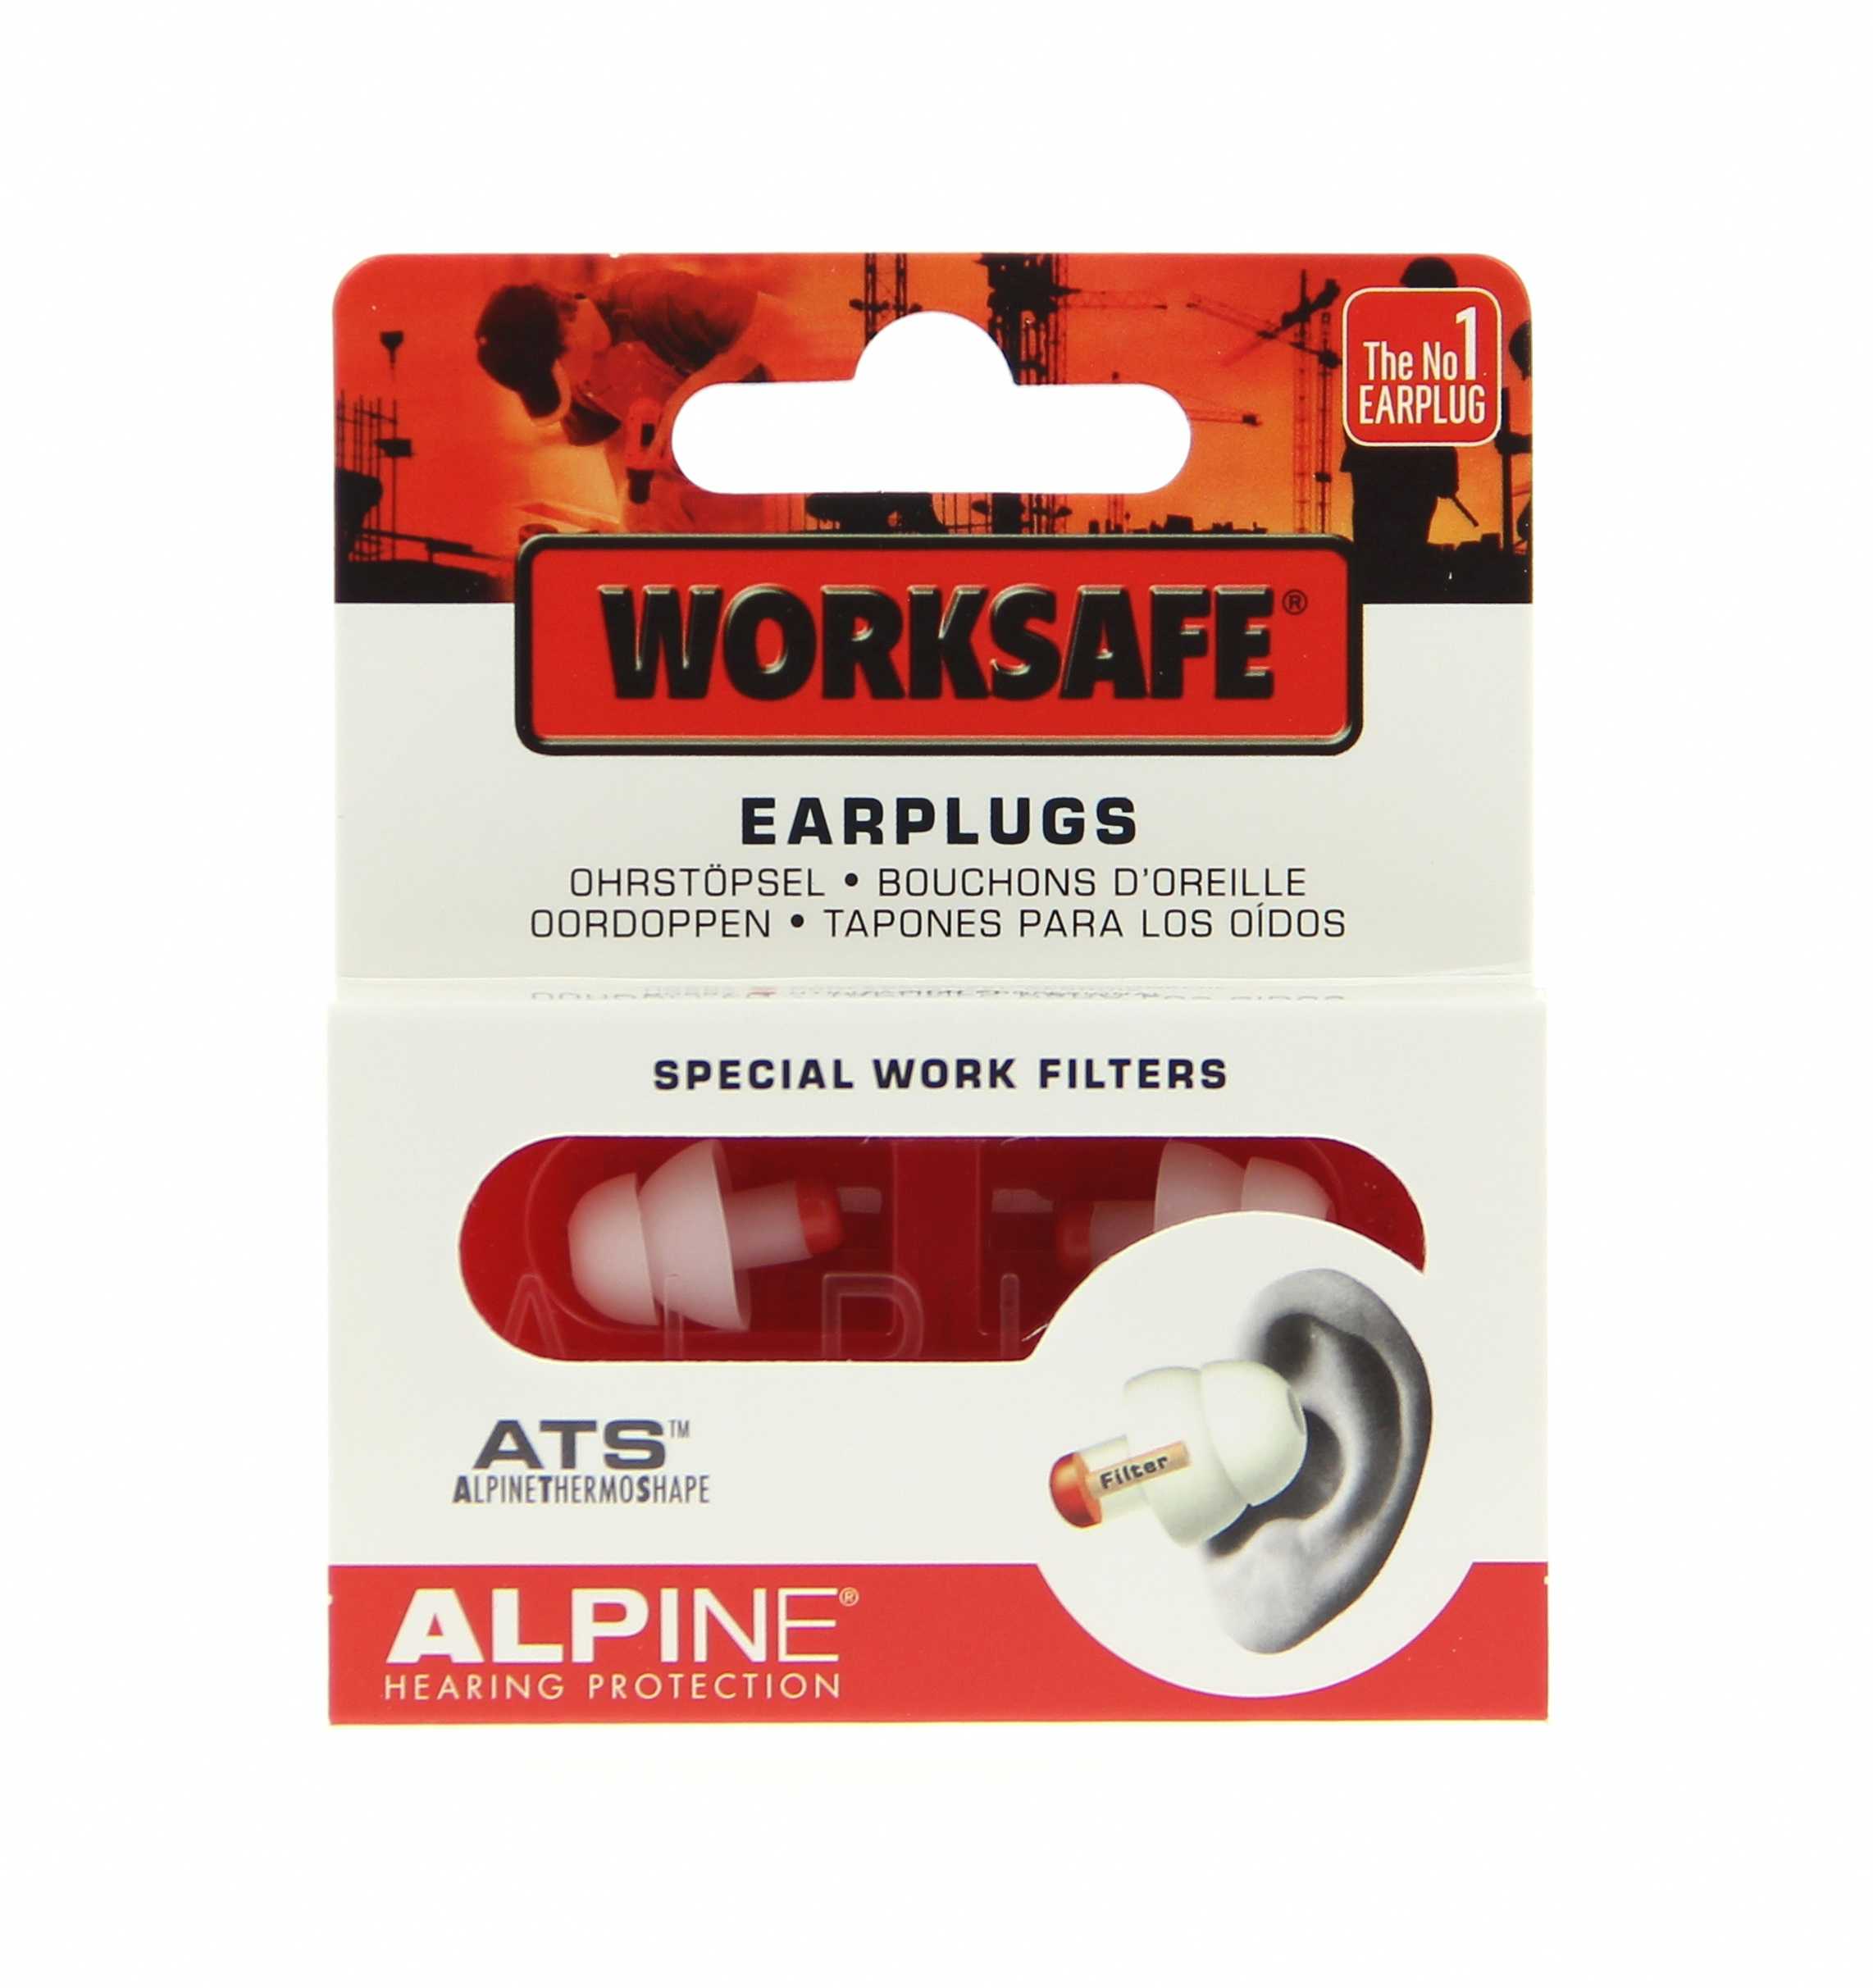 Bouchons d'oreille pour le travail alpine worksafe - Optical Center